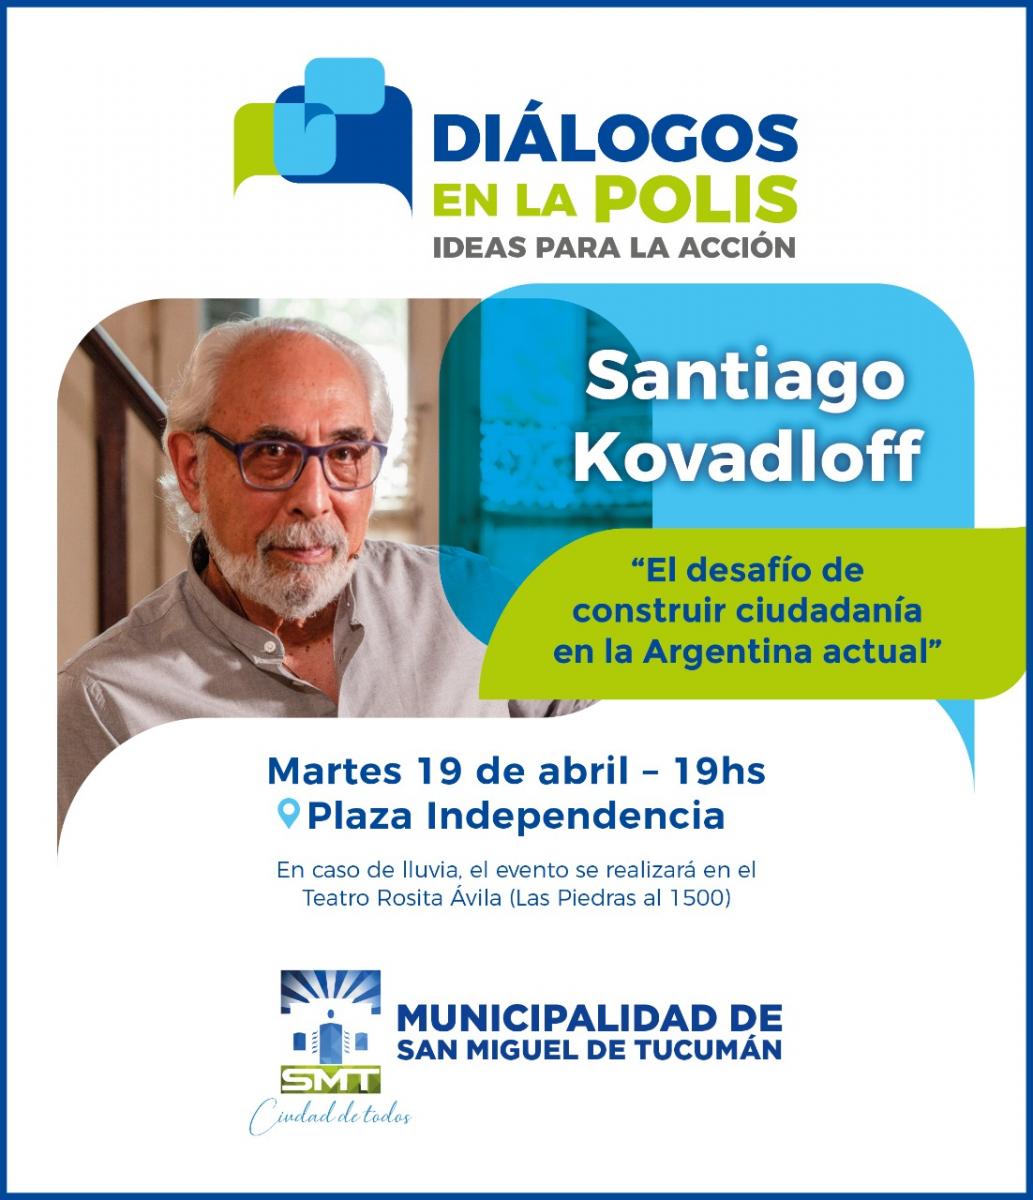 Kovadloff inaugura en Tucumán los “Diálogos en la polis”